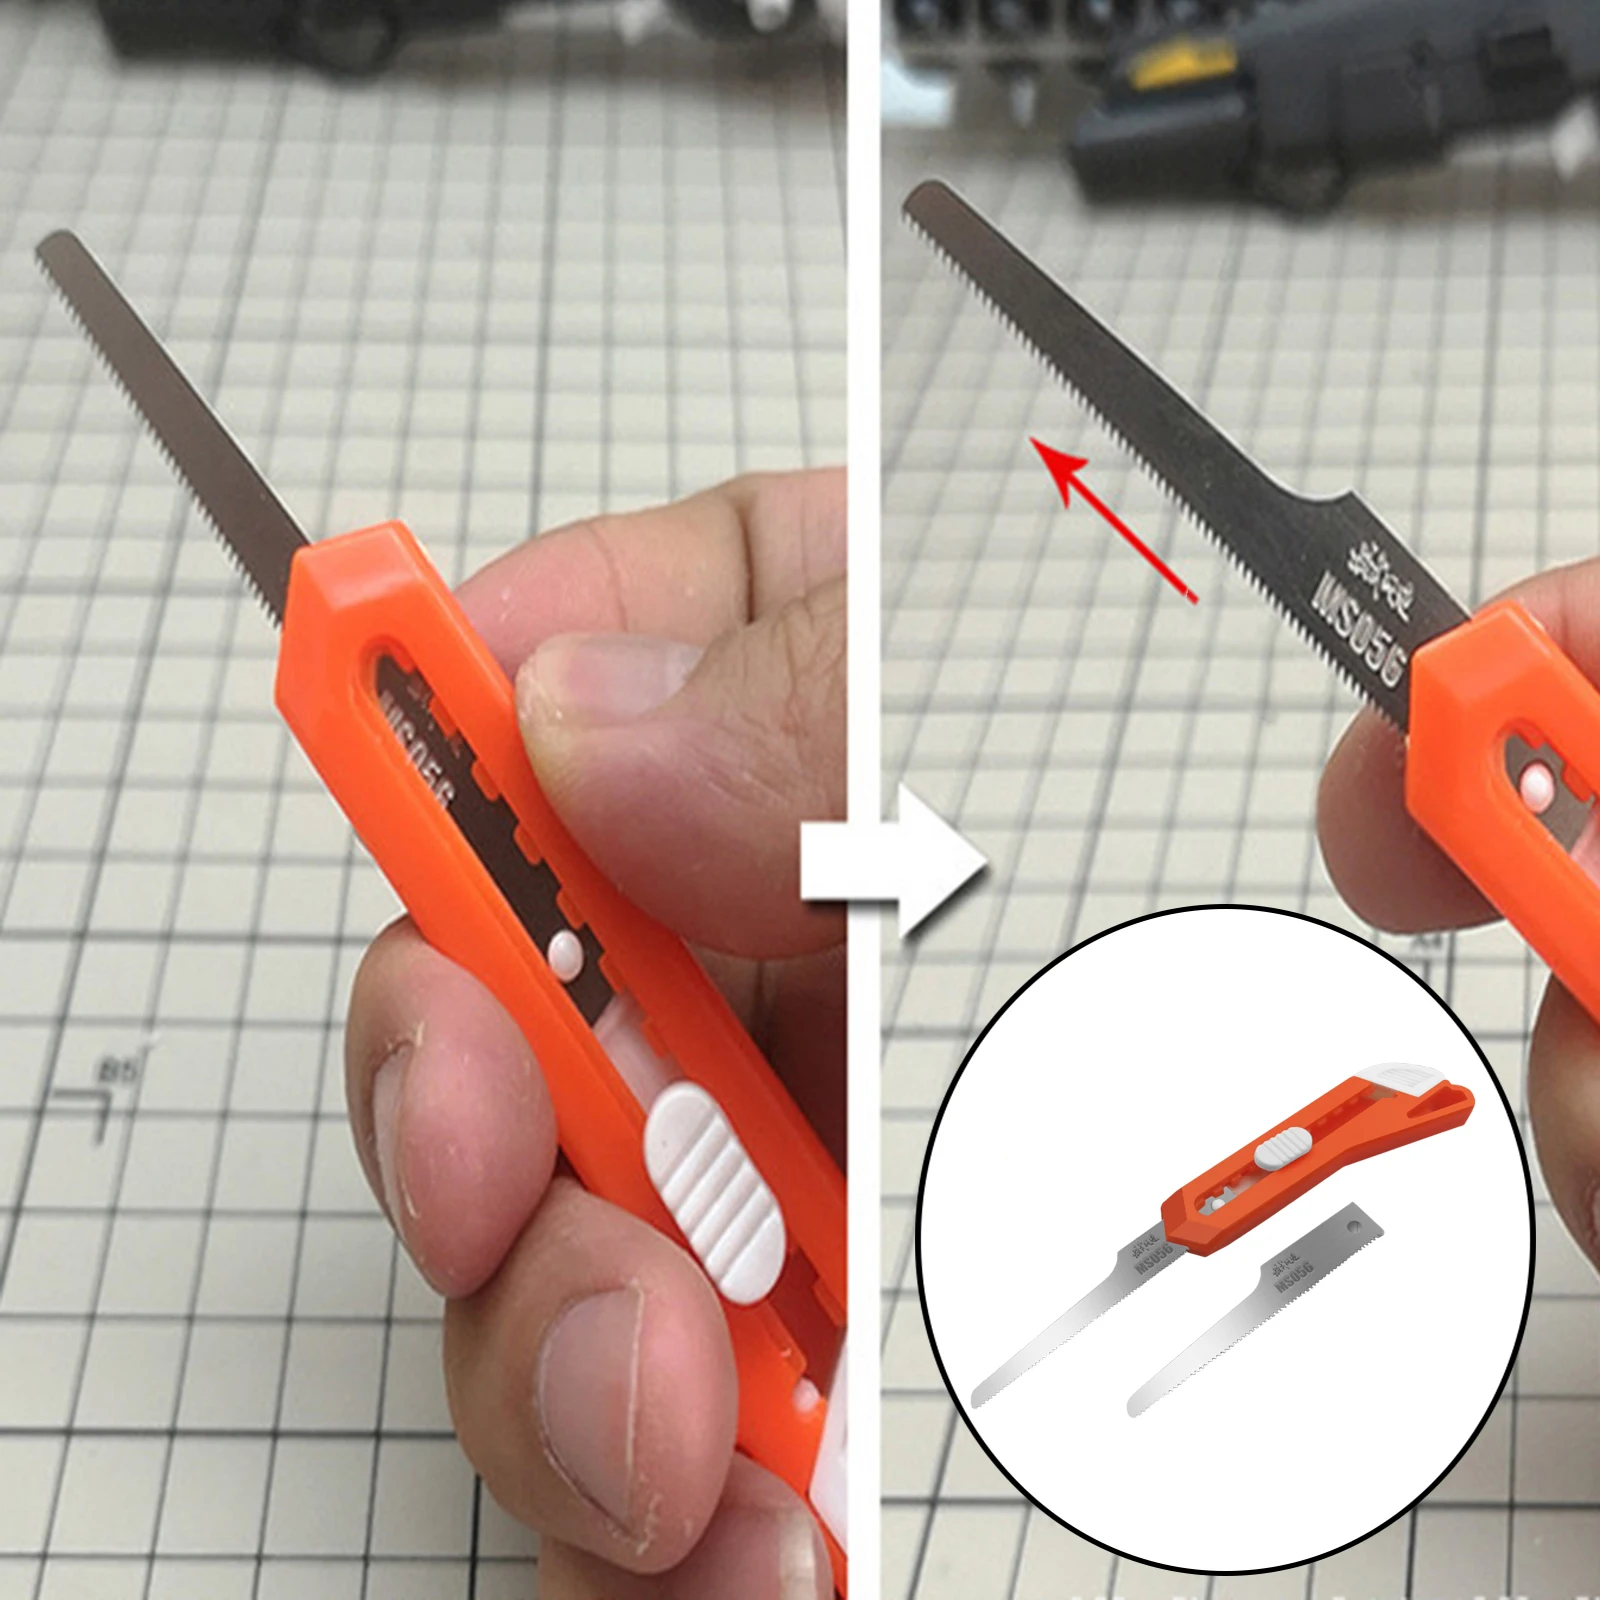 Handy Mini Hand Saw Cutter 2 in 1 DIY Craft Model Hand Saw Hacksaw